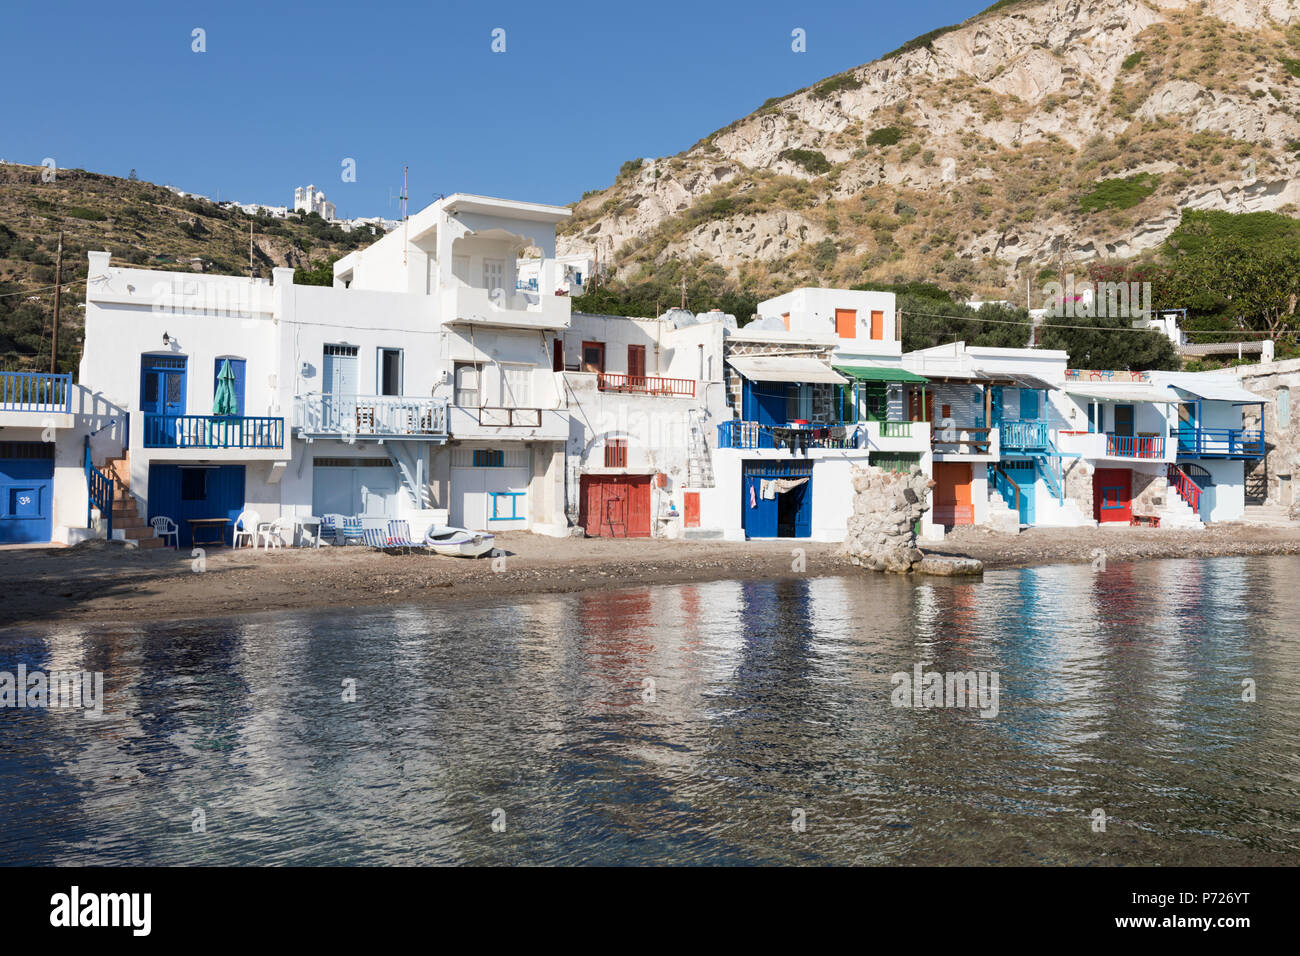 Coloridos barcos de pescadores con casas en la colina de Plaka, Klima, Milos, Cyclades, islas griegas del Mar Egeo, Grecia, Europa Foto de stock